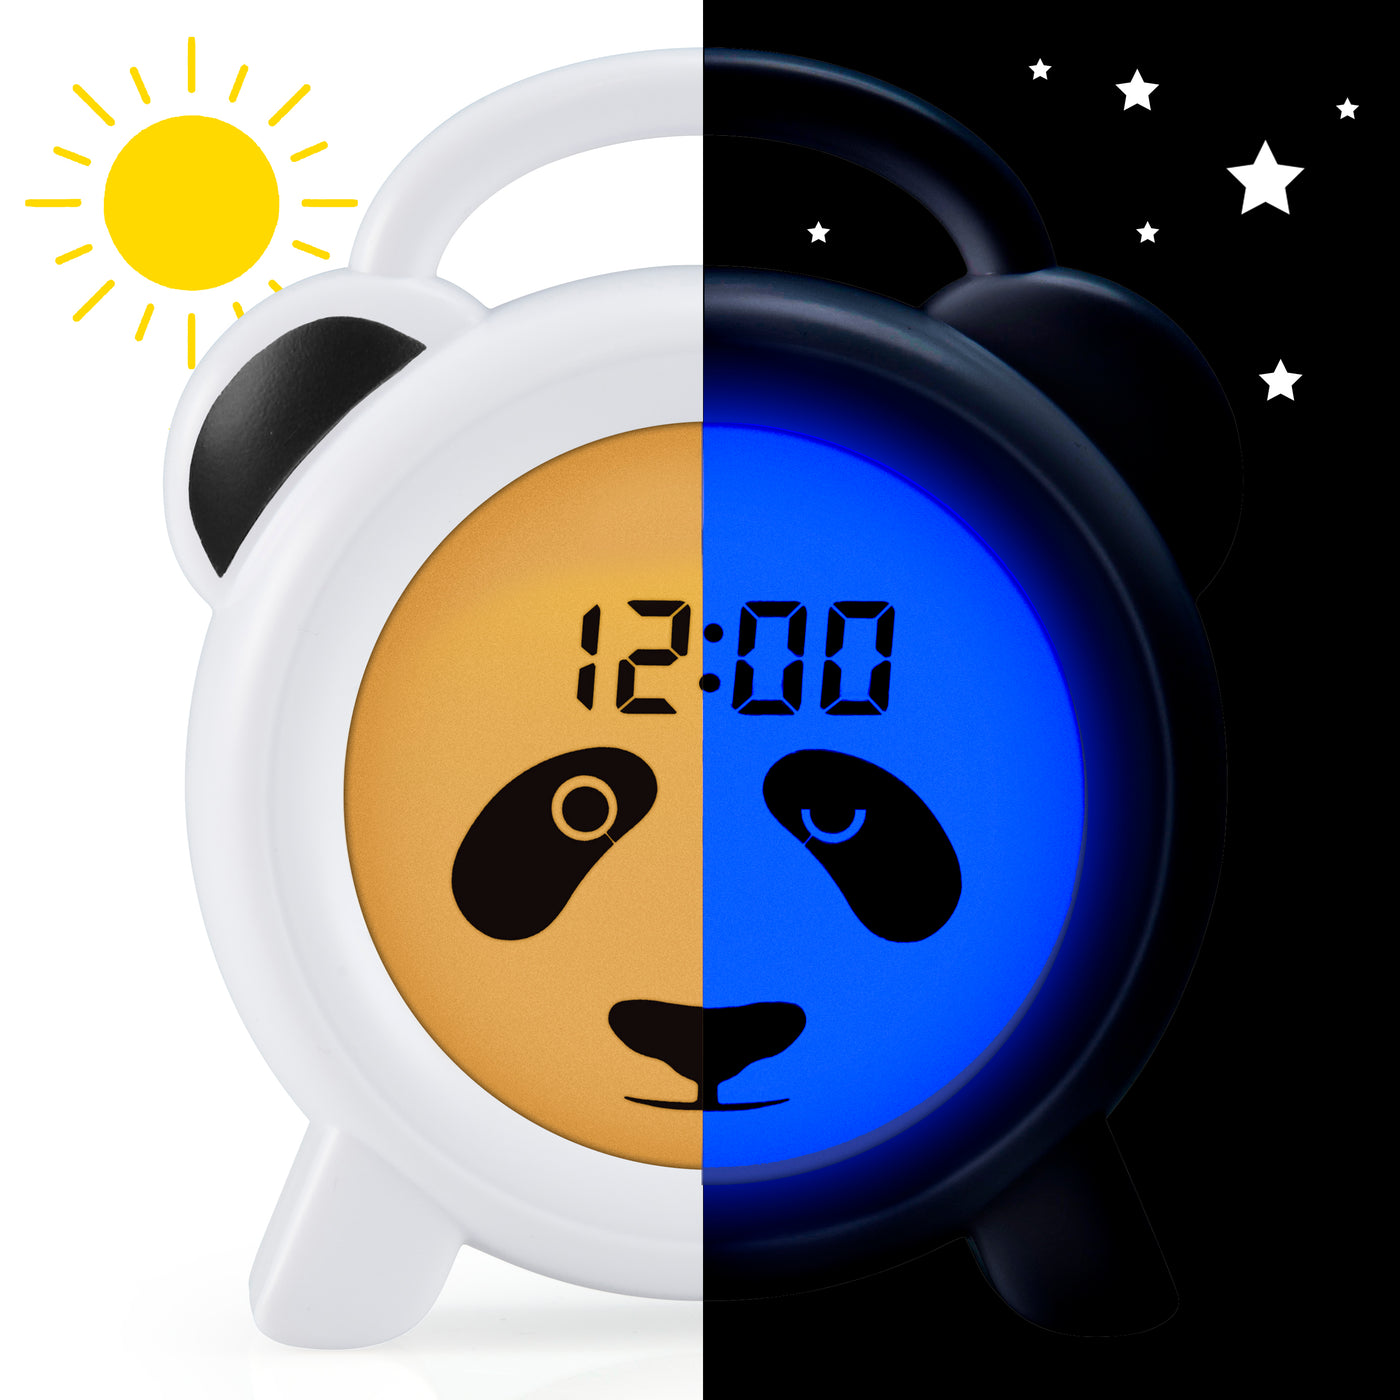 Alecto BC100PANDA - Réveil pédagogique et veilleuse, panda